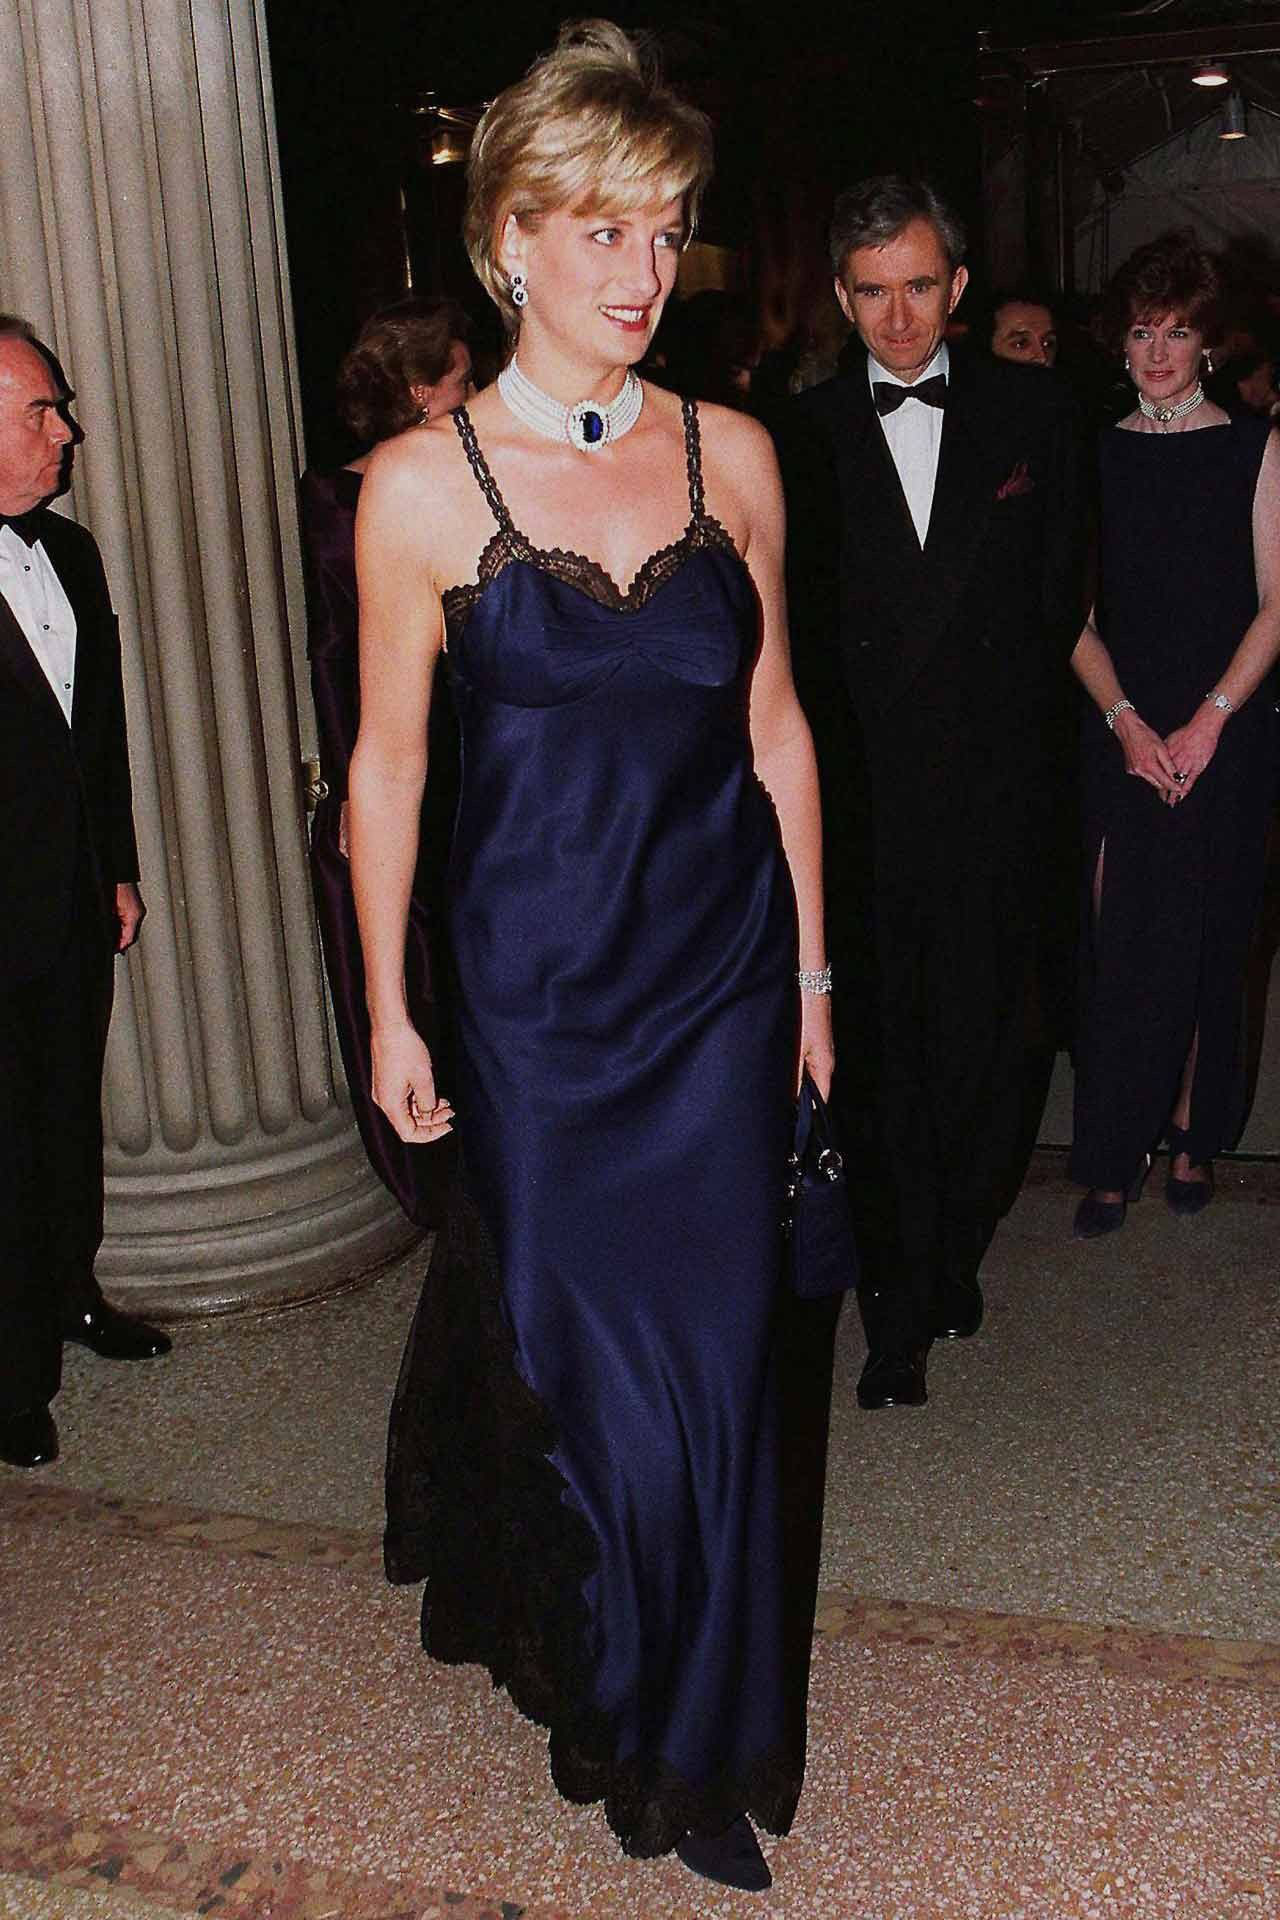 24 năm trước, Công nương Diana từng khiến cả thế giới phải sốc khi cả gan diện váy 2 dây sexy phá luật hoàng gia đến Met Gala - Ảnh 1.